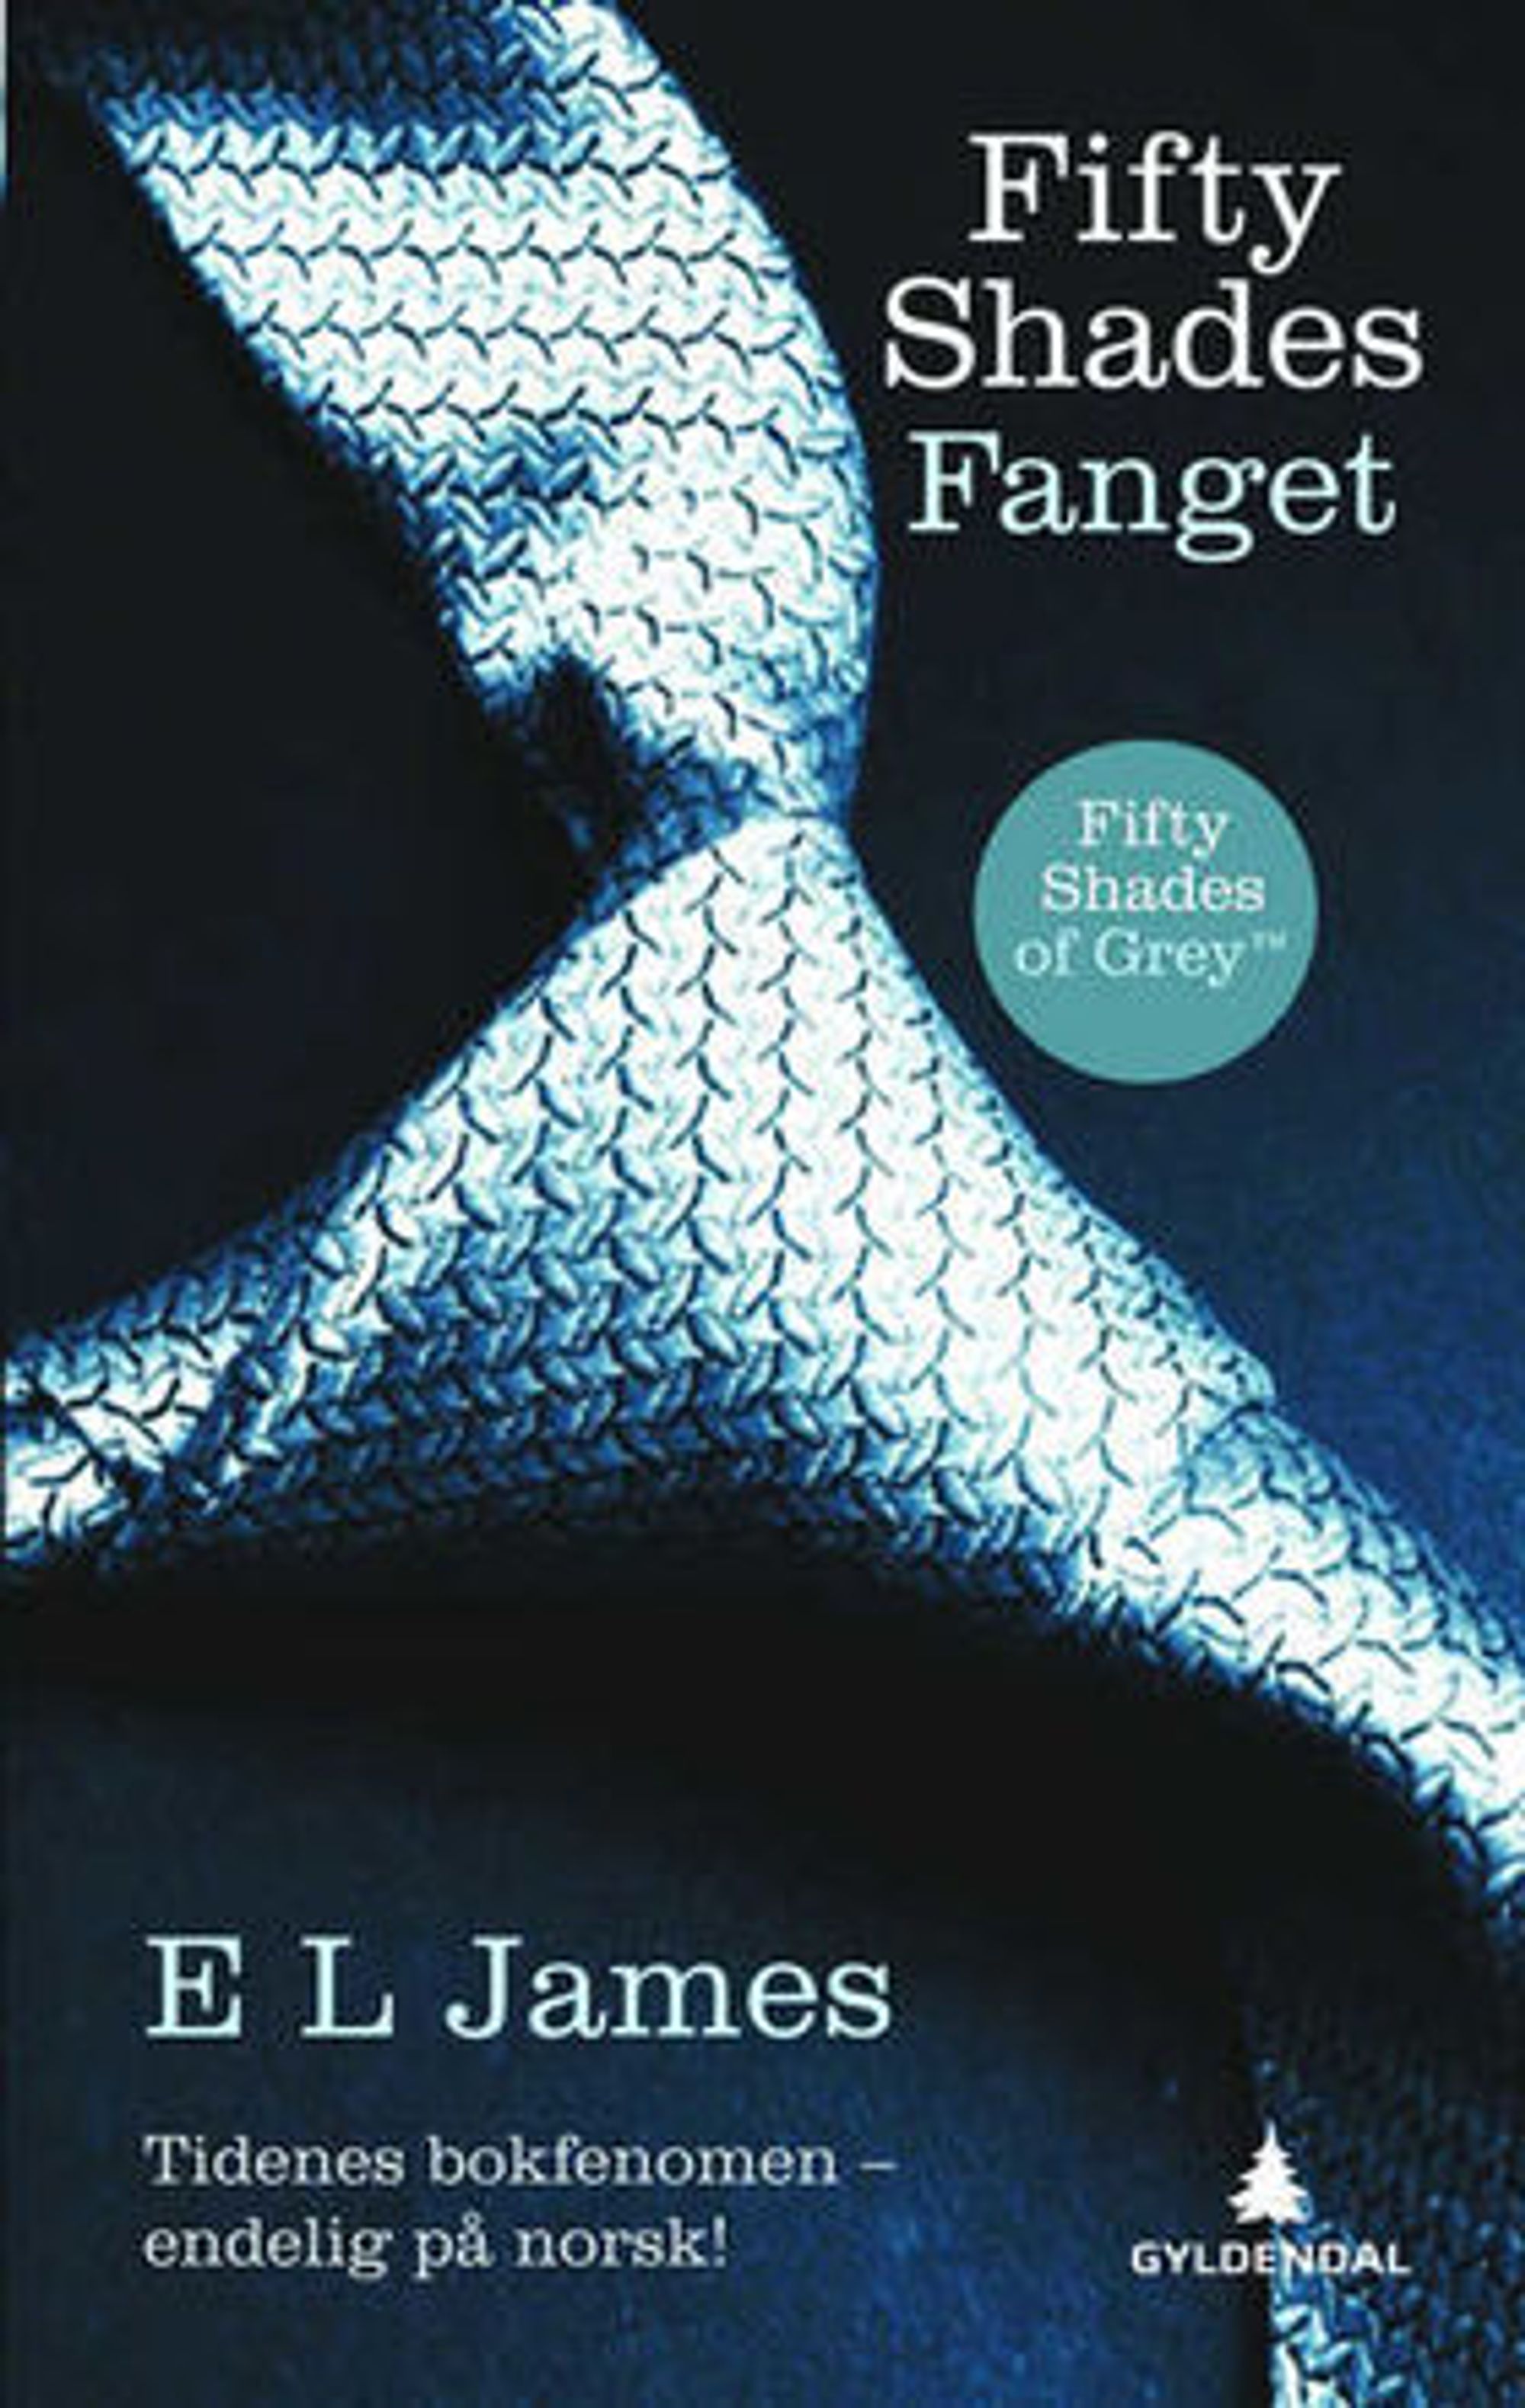 Den første boken i triologien "Fifty Shades of Grey" har blitt en suksess som ebok i Norge. 